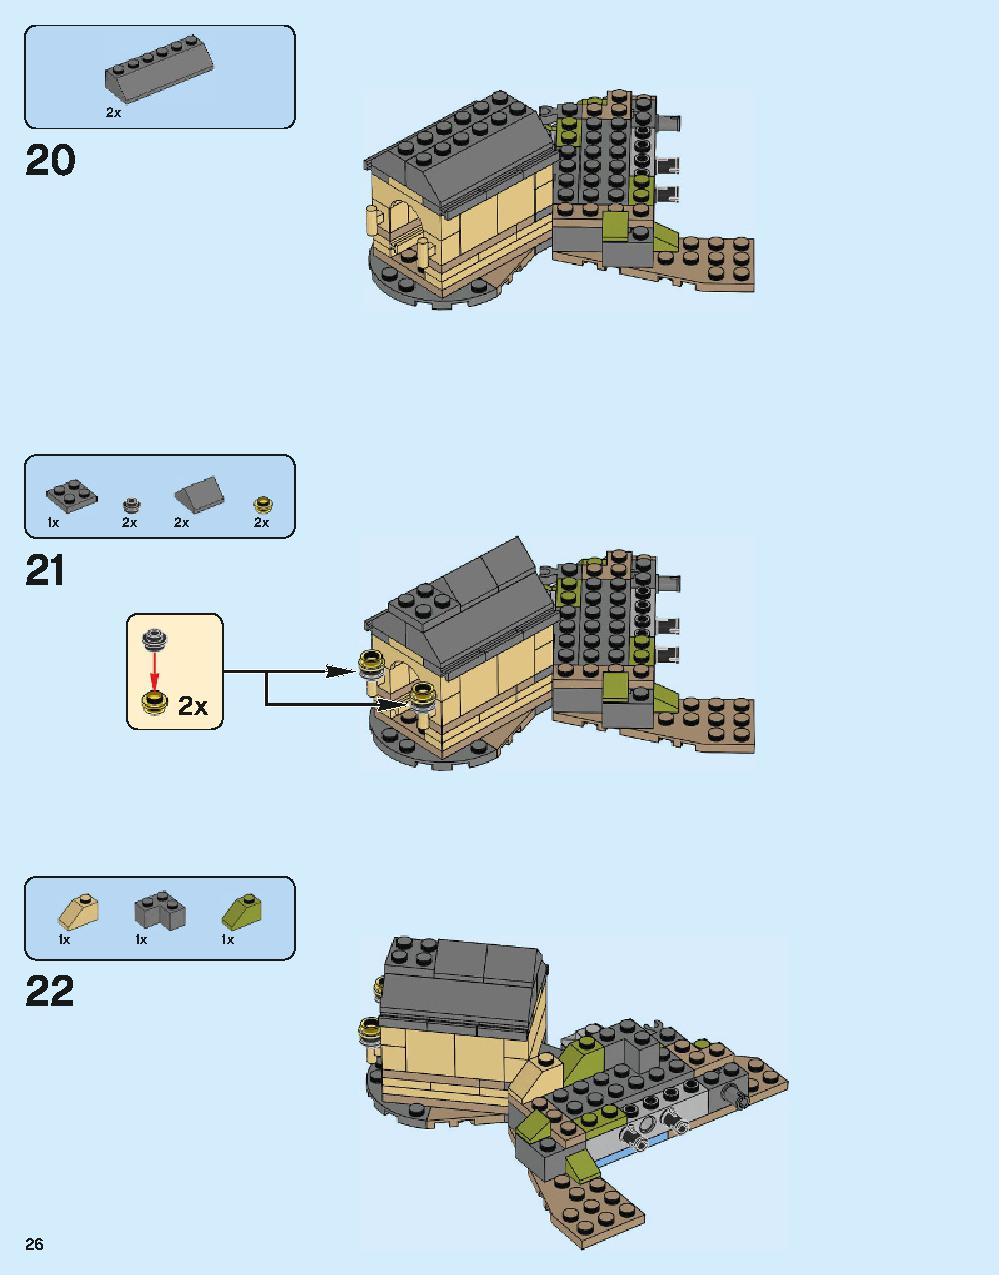 ホグワーツ城 71043 レゴの商品情報 レゴの説明書・組立方法 26 page